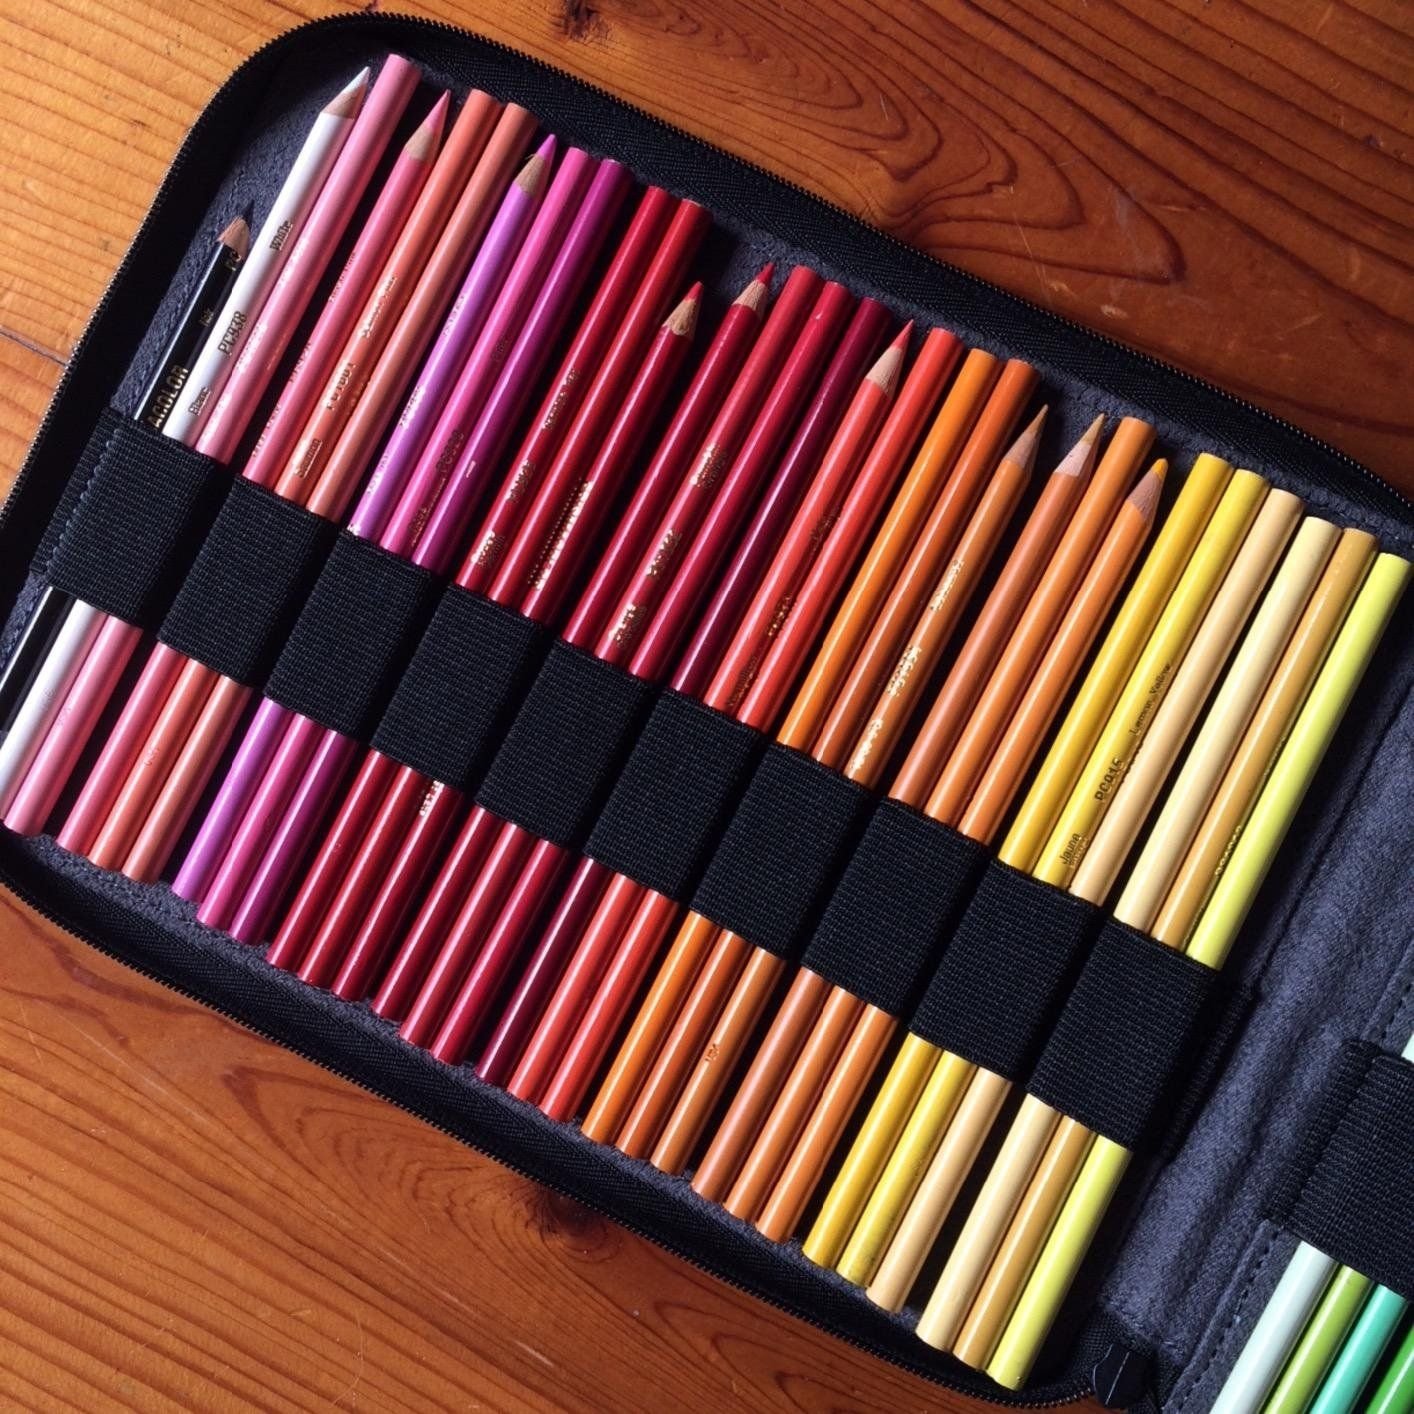 Цветные карандаши в пенале. Пенал для карандашей. Пенальчик для карандашей. Удобный пенал для карандашей. Пенал для цветных карандашей.